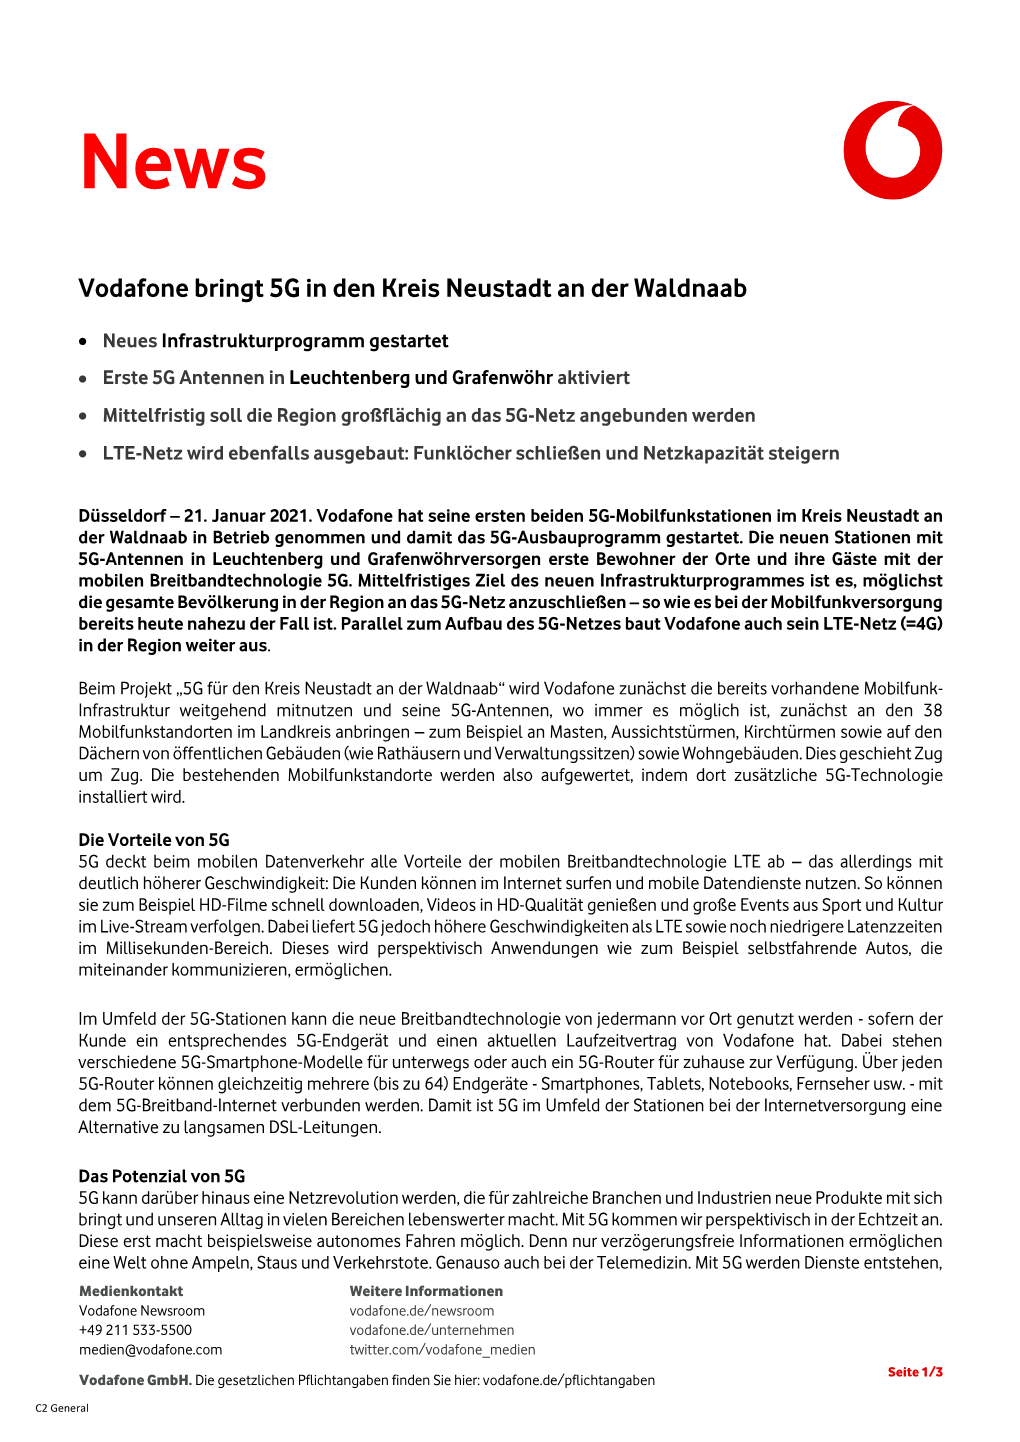 Vodafone Bringt 5G in Den Kreis Neustadt an Der Waldnaab